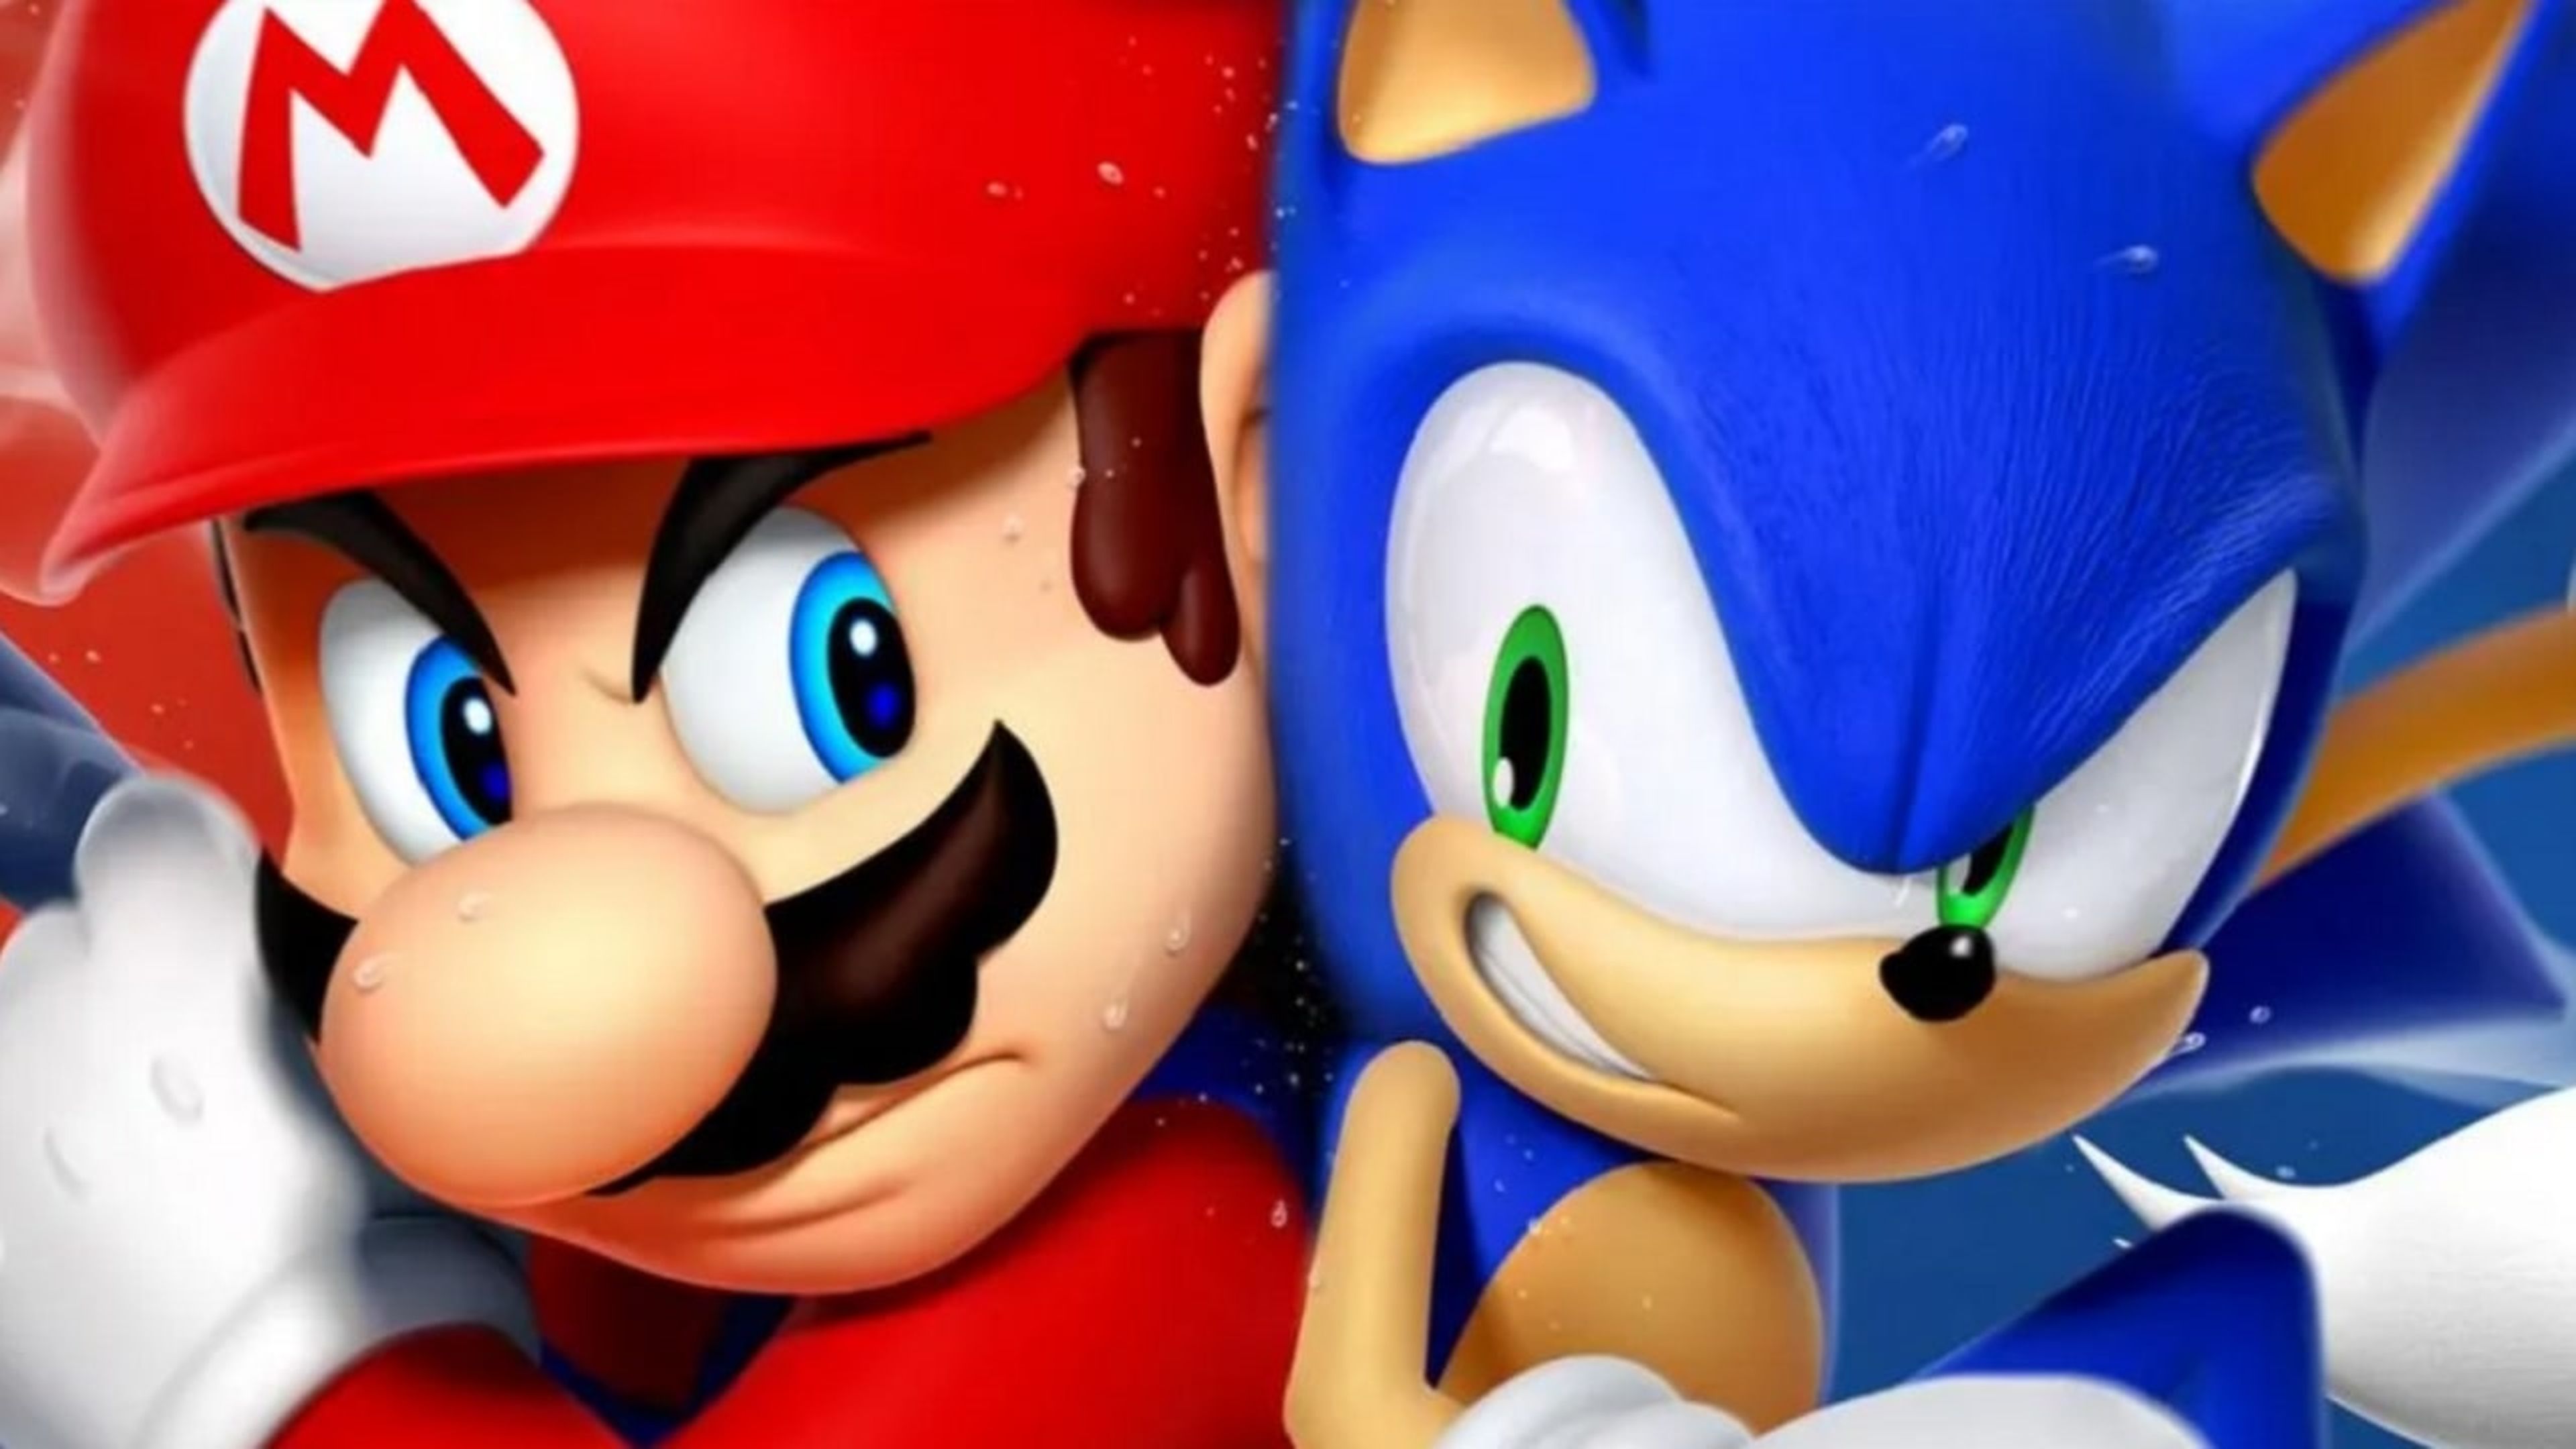 Mario y Sonic